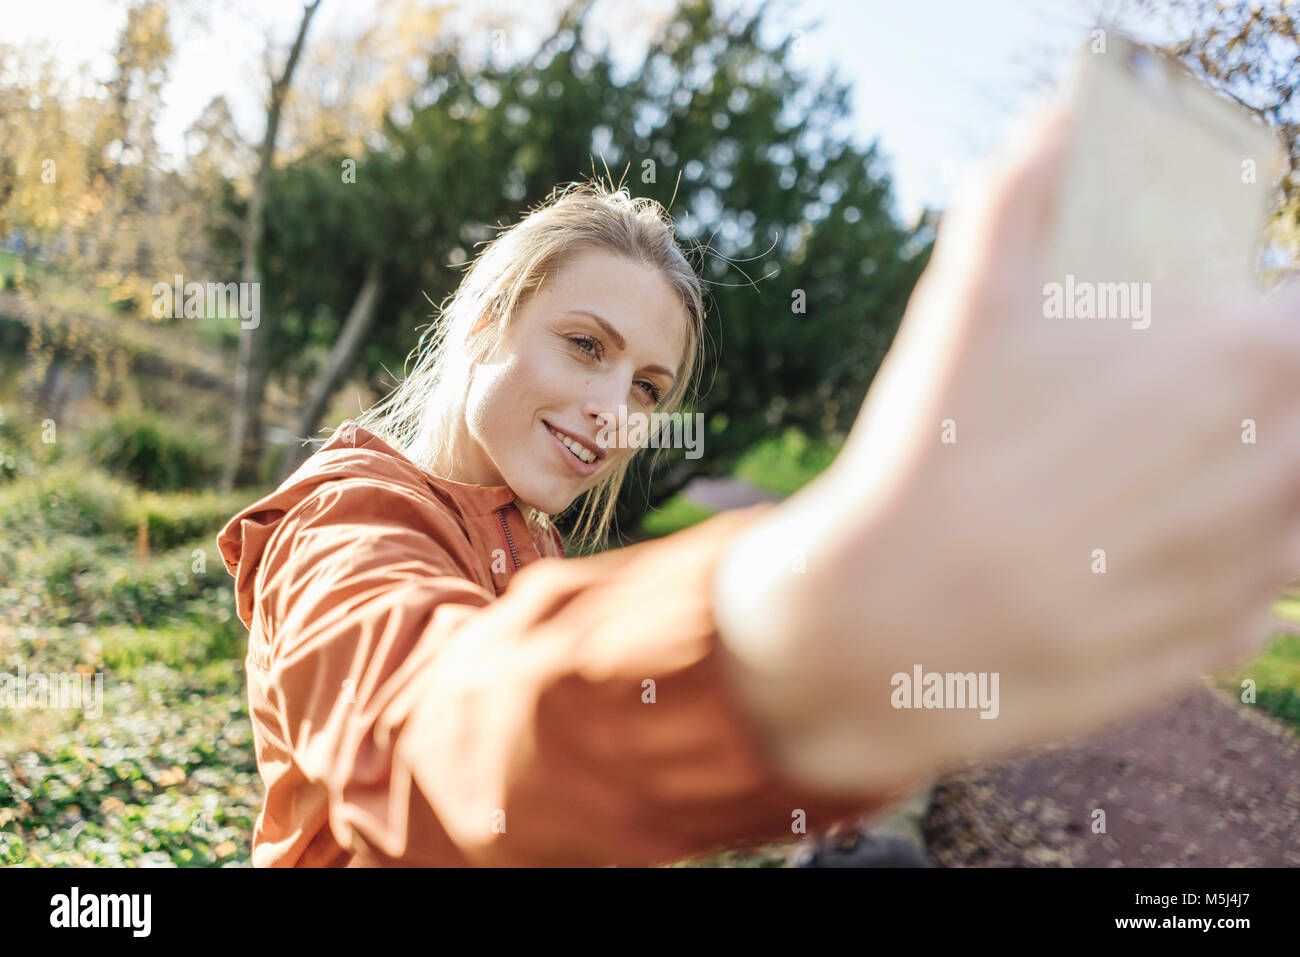 Retrato de mujer joven tomando selfie con teléfono celular en parque otoñal Foto de stock